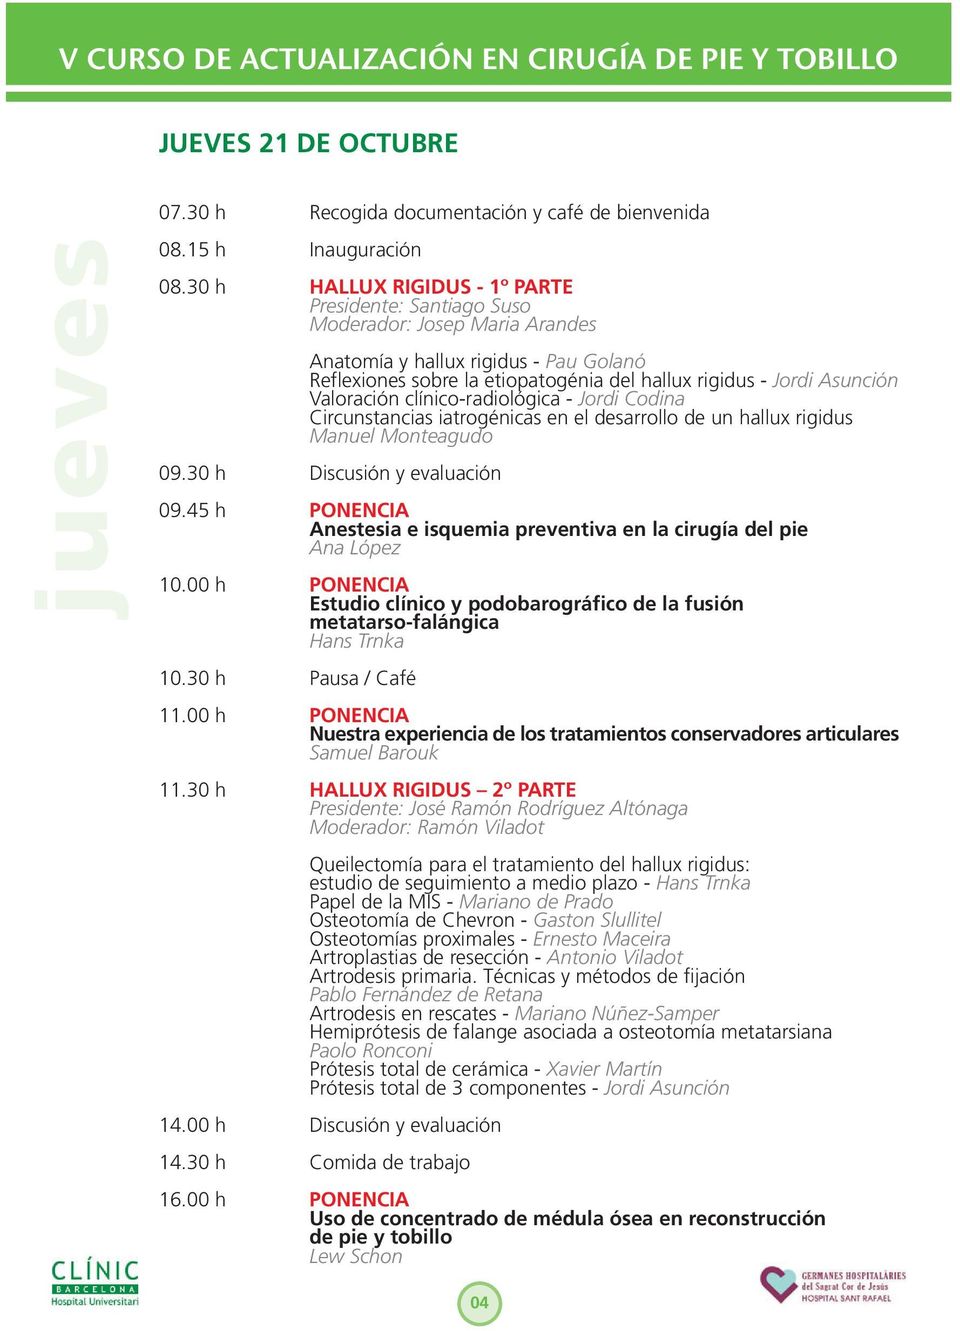 Valoración clínico-radiológica - Jordi Codina Circunstancias iatrogénicas en el desarrollo de un hallux rigidus Manuel Monteagudo 09.30 h Discusión y evaluación 09.